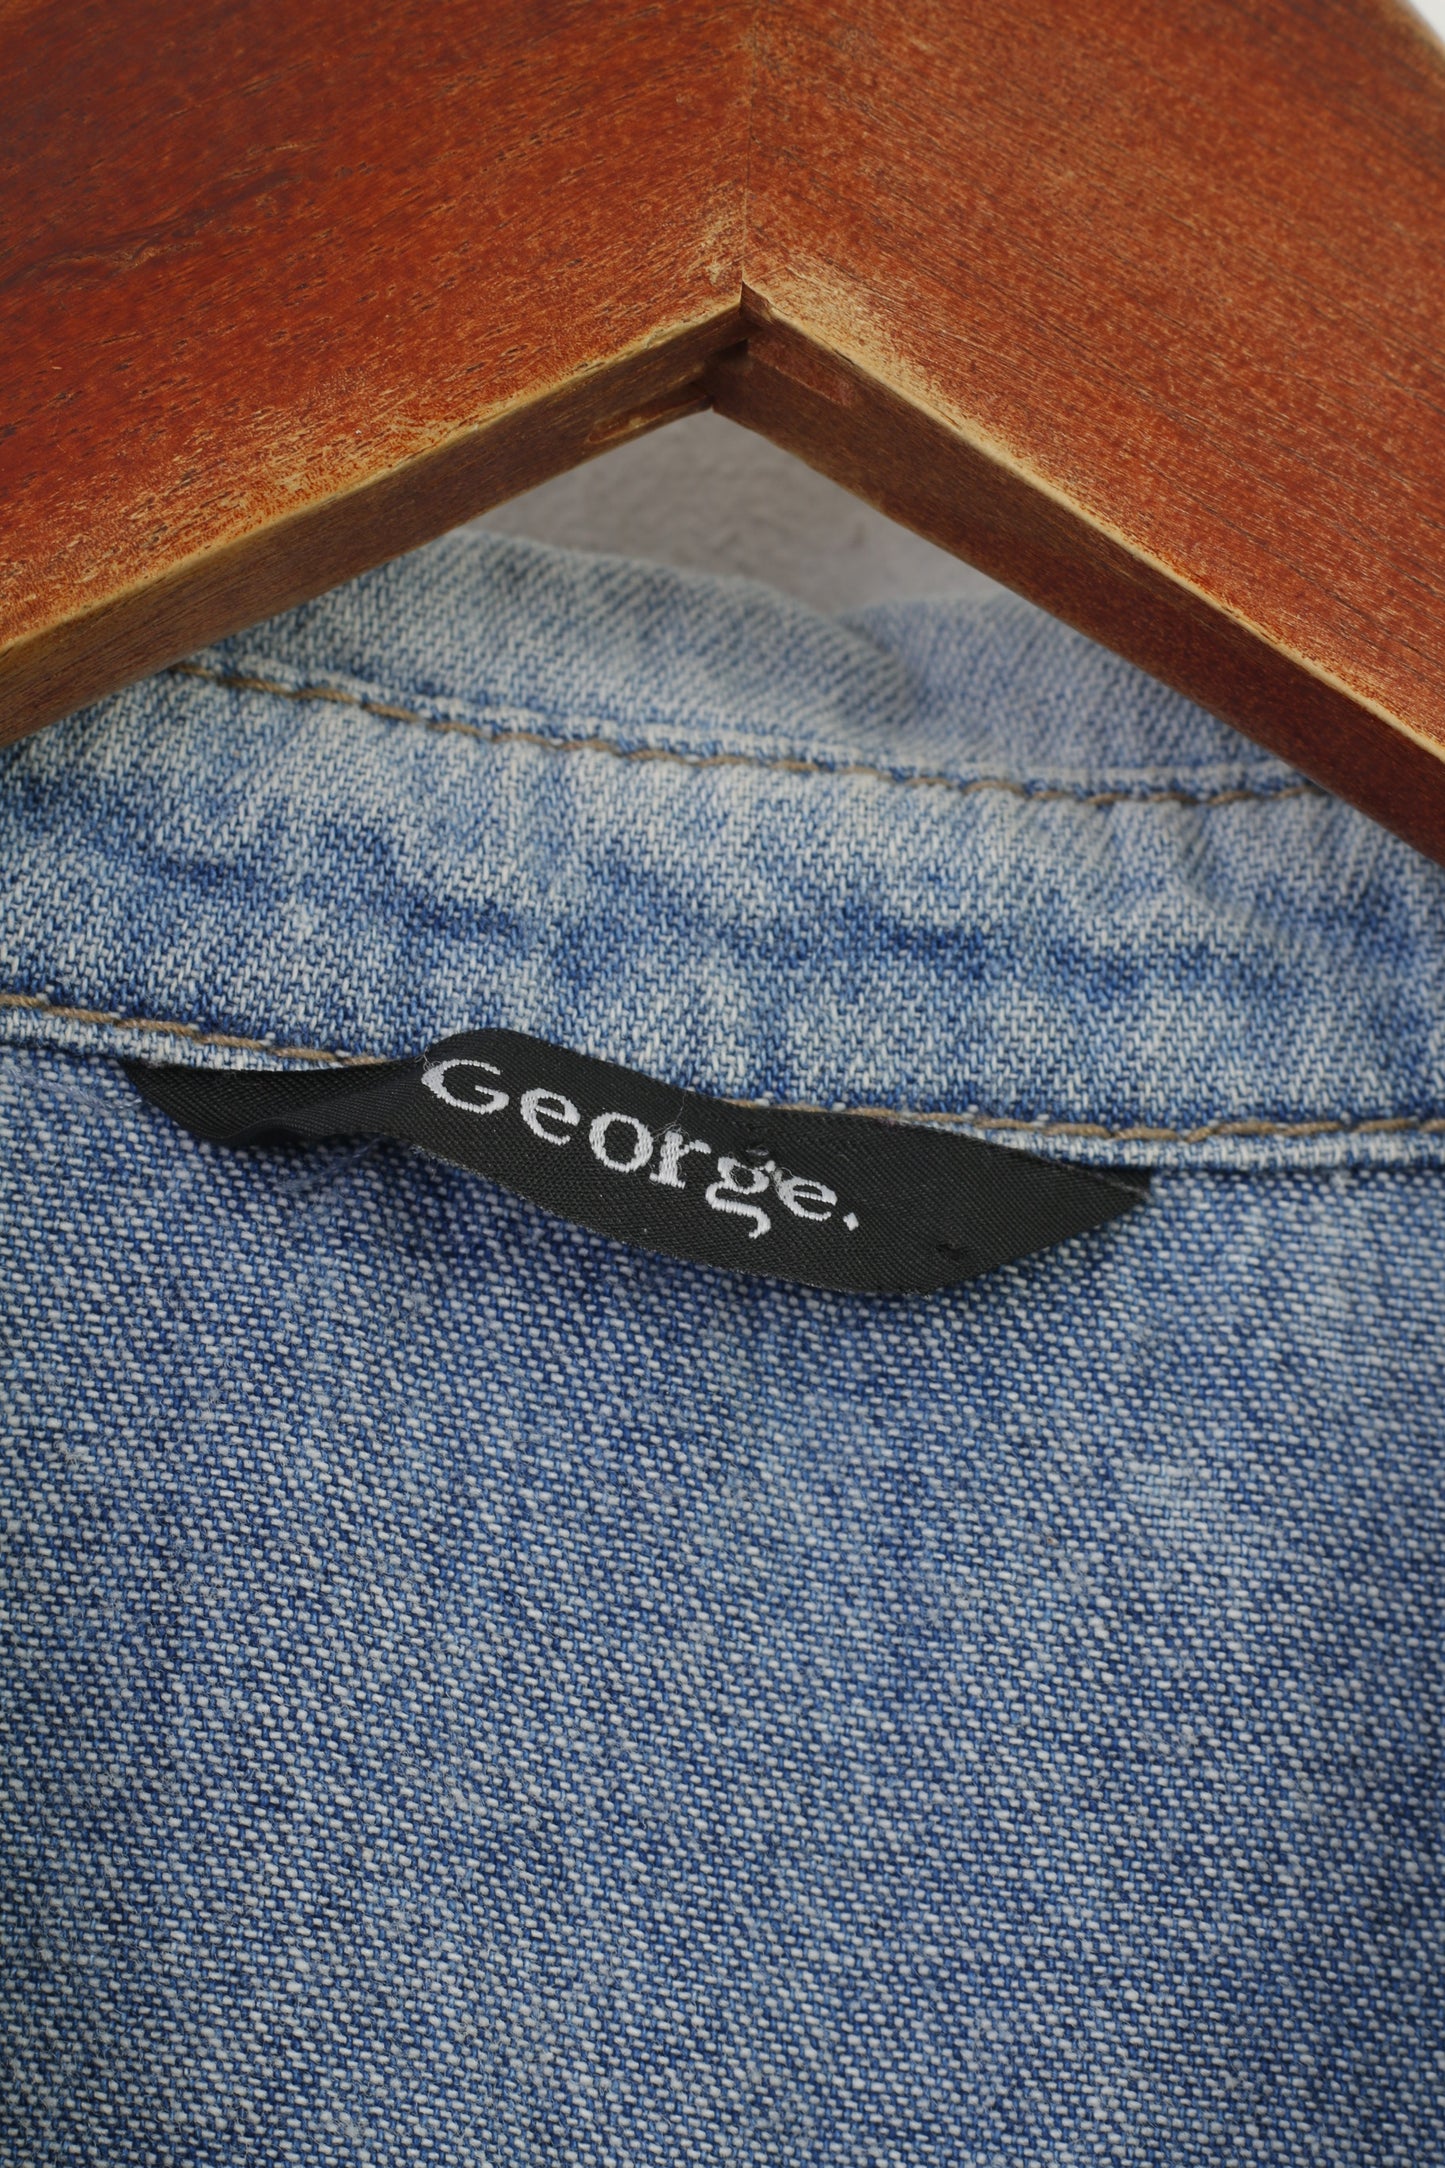 George Women 14 42 M Gilet Denim Tasche in cotone dettagliate Jeans Pantaloni blu senza maniche Top vintage